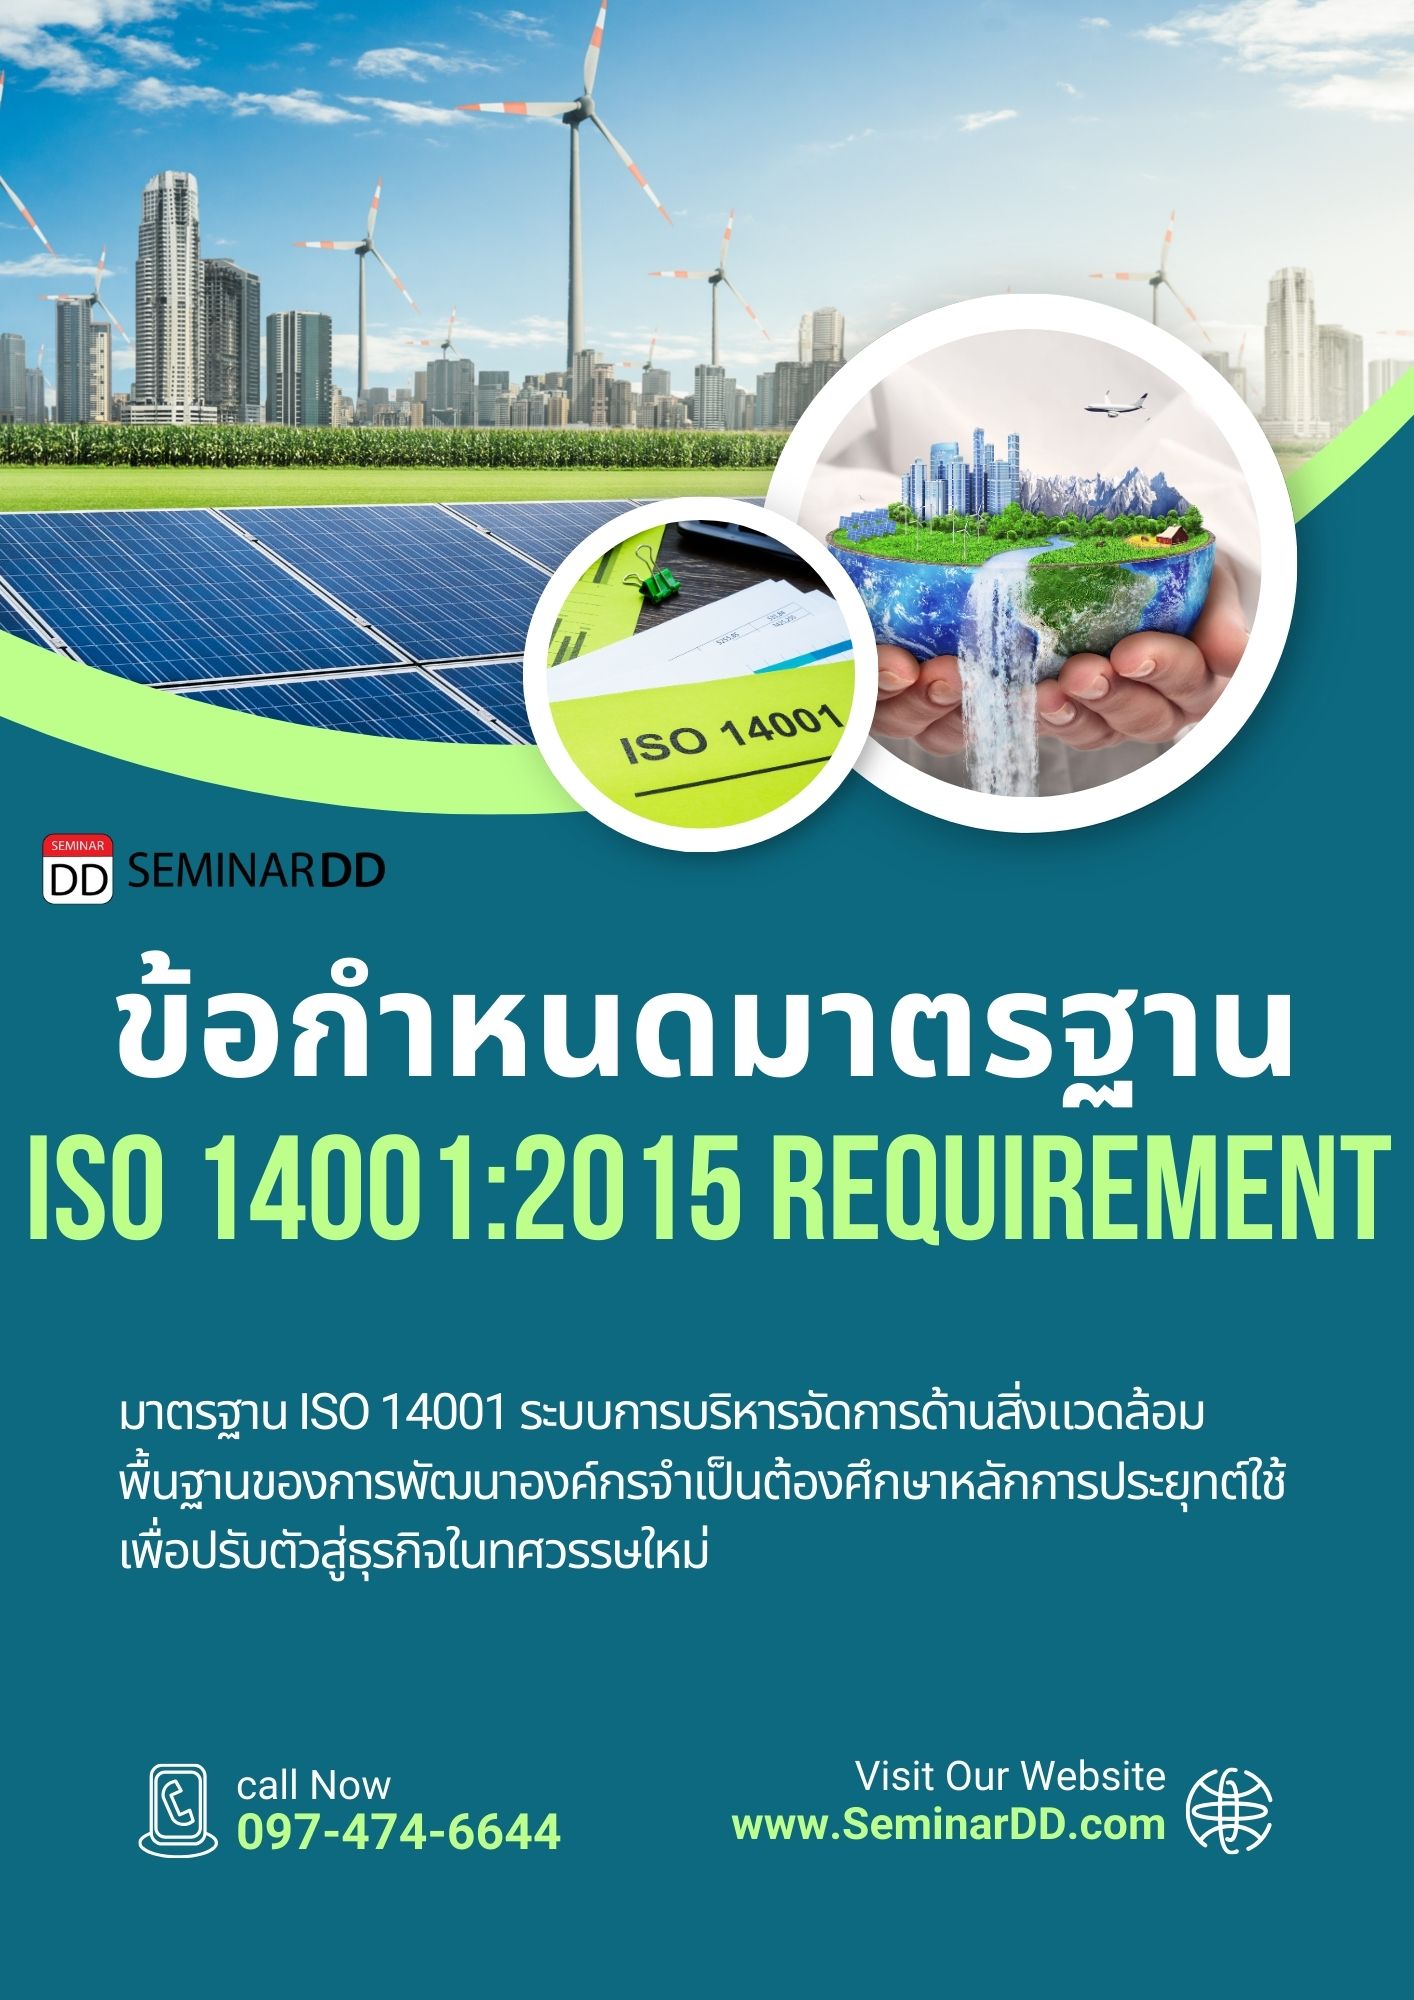 หลักสูตร ข้อกำหนดของมาตรฐาน ISO 14001:2015 (ISO 14001:2015 Requirement)